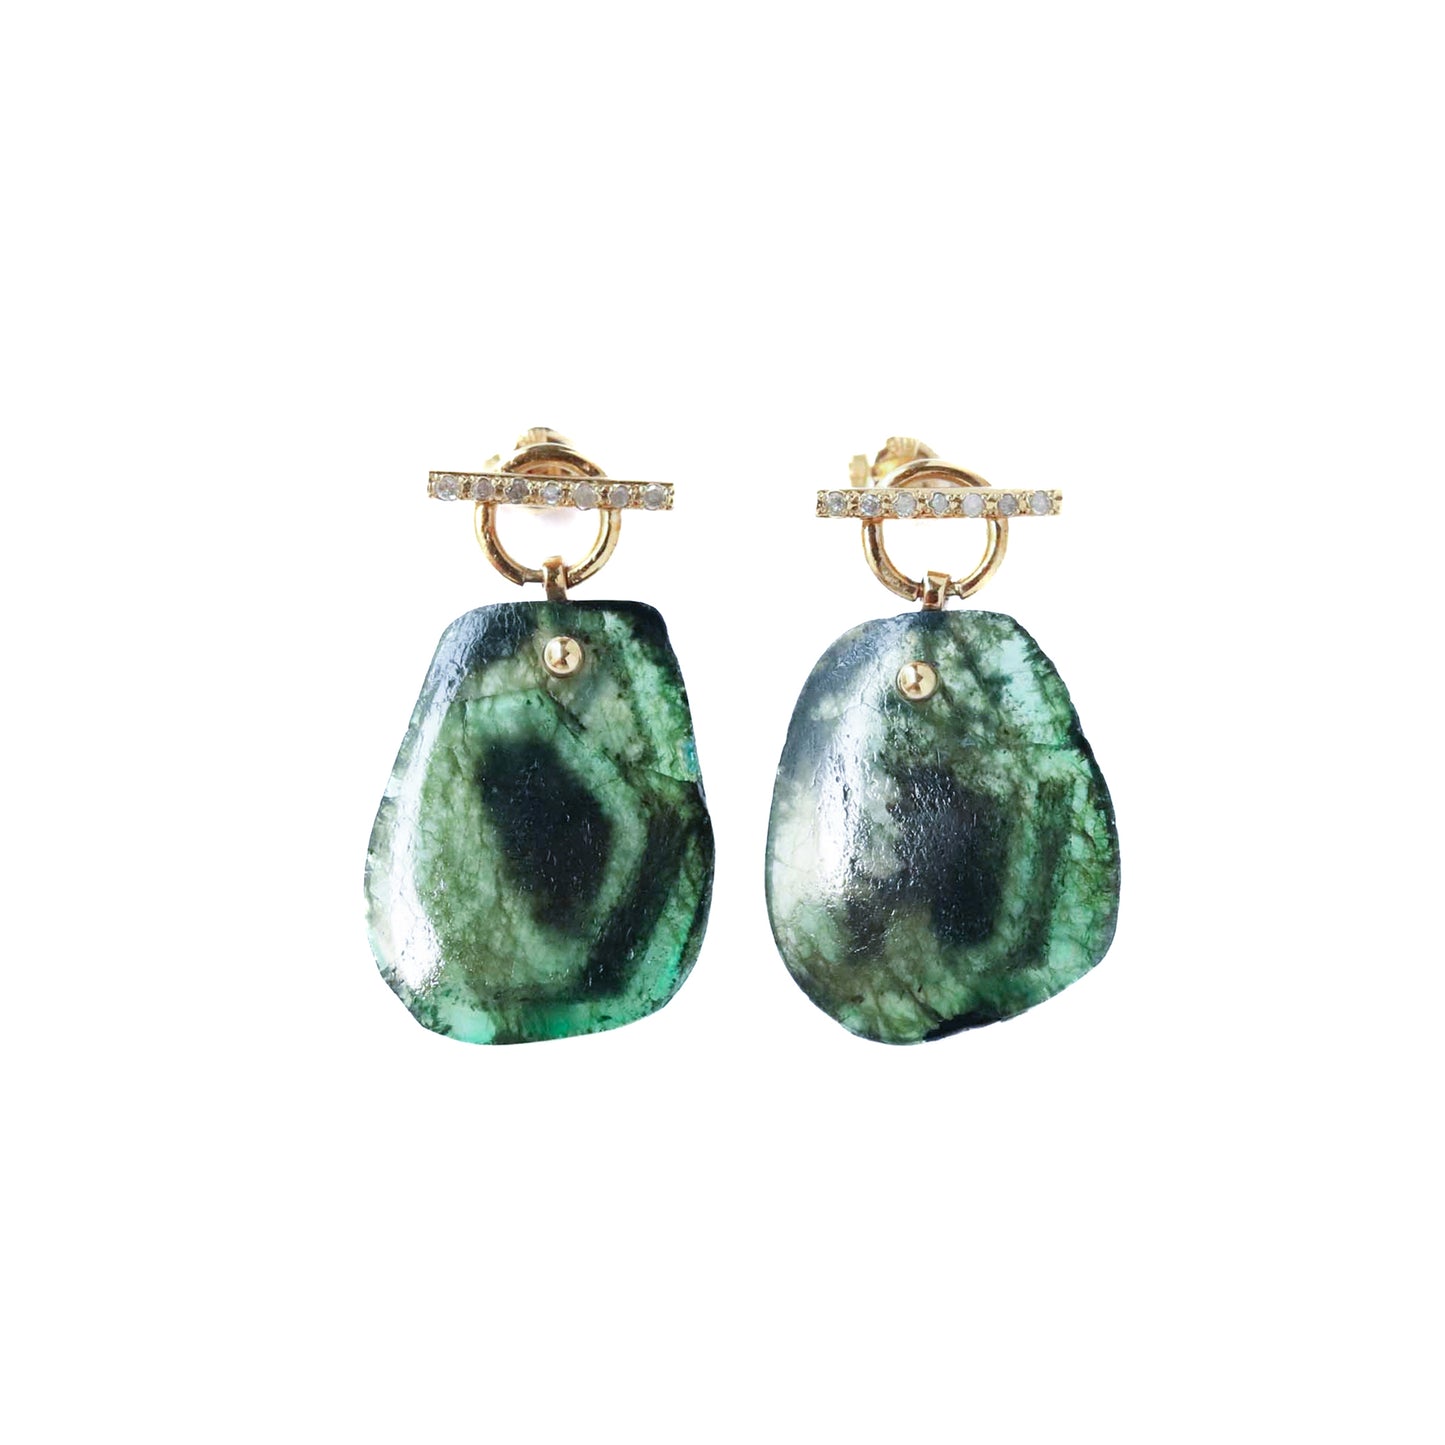 Mantel Pierced Earrings - Emerald / Diamond -